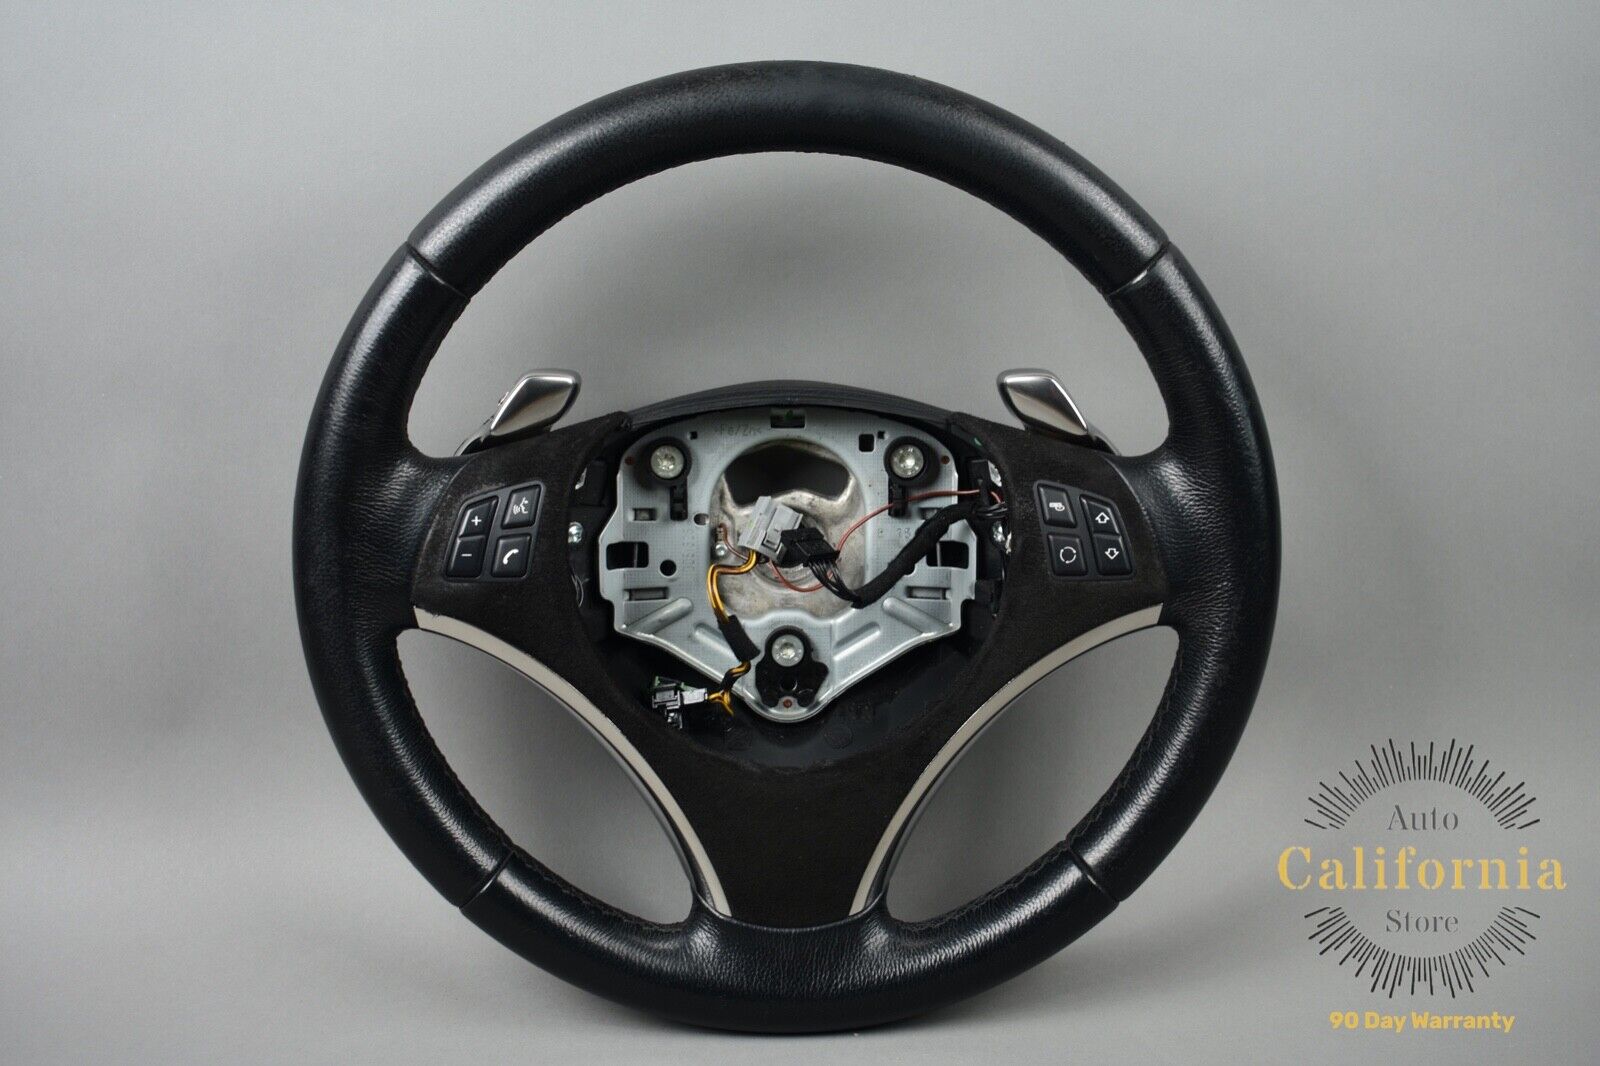 06-11 BMW E90 E92 135i 335d Sport Steering Wheel Black Leather w/ Shifters OEM